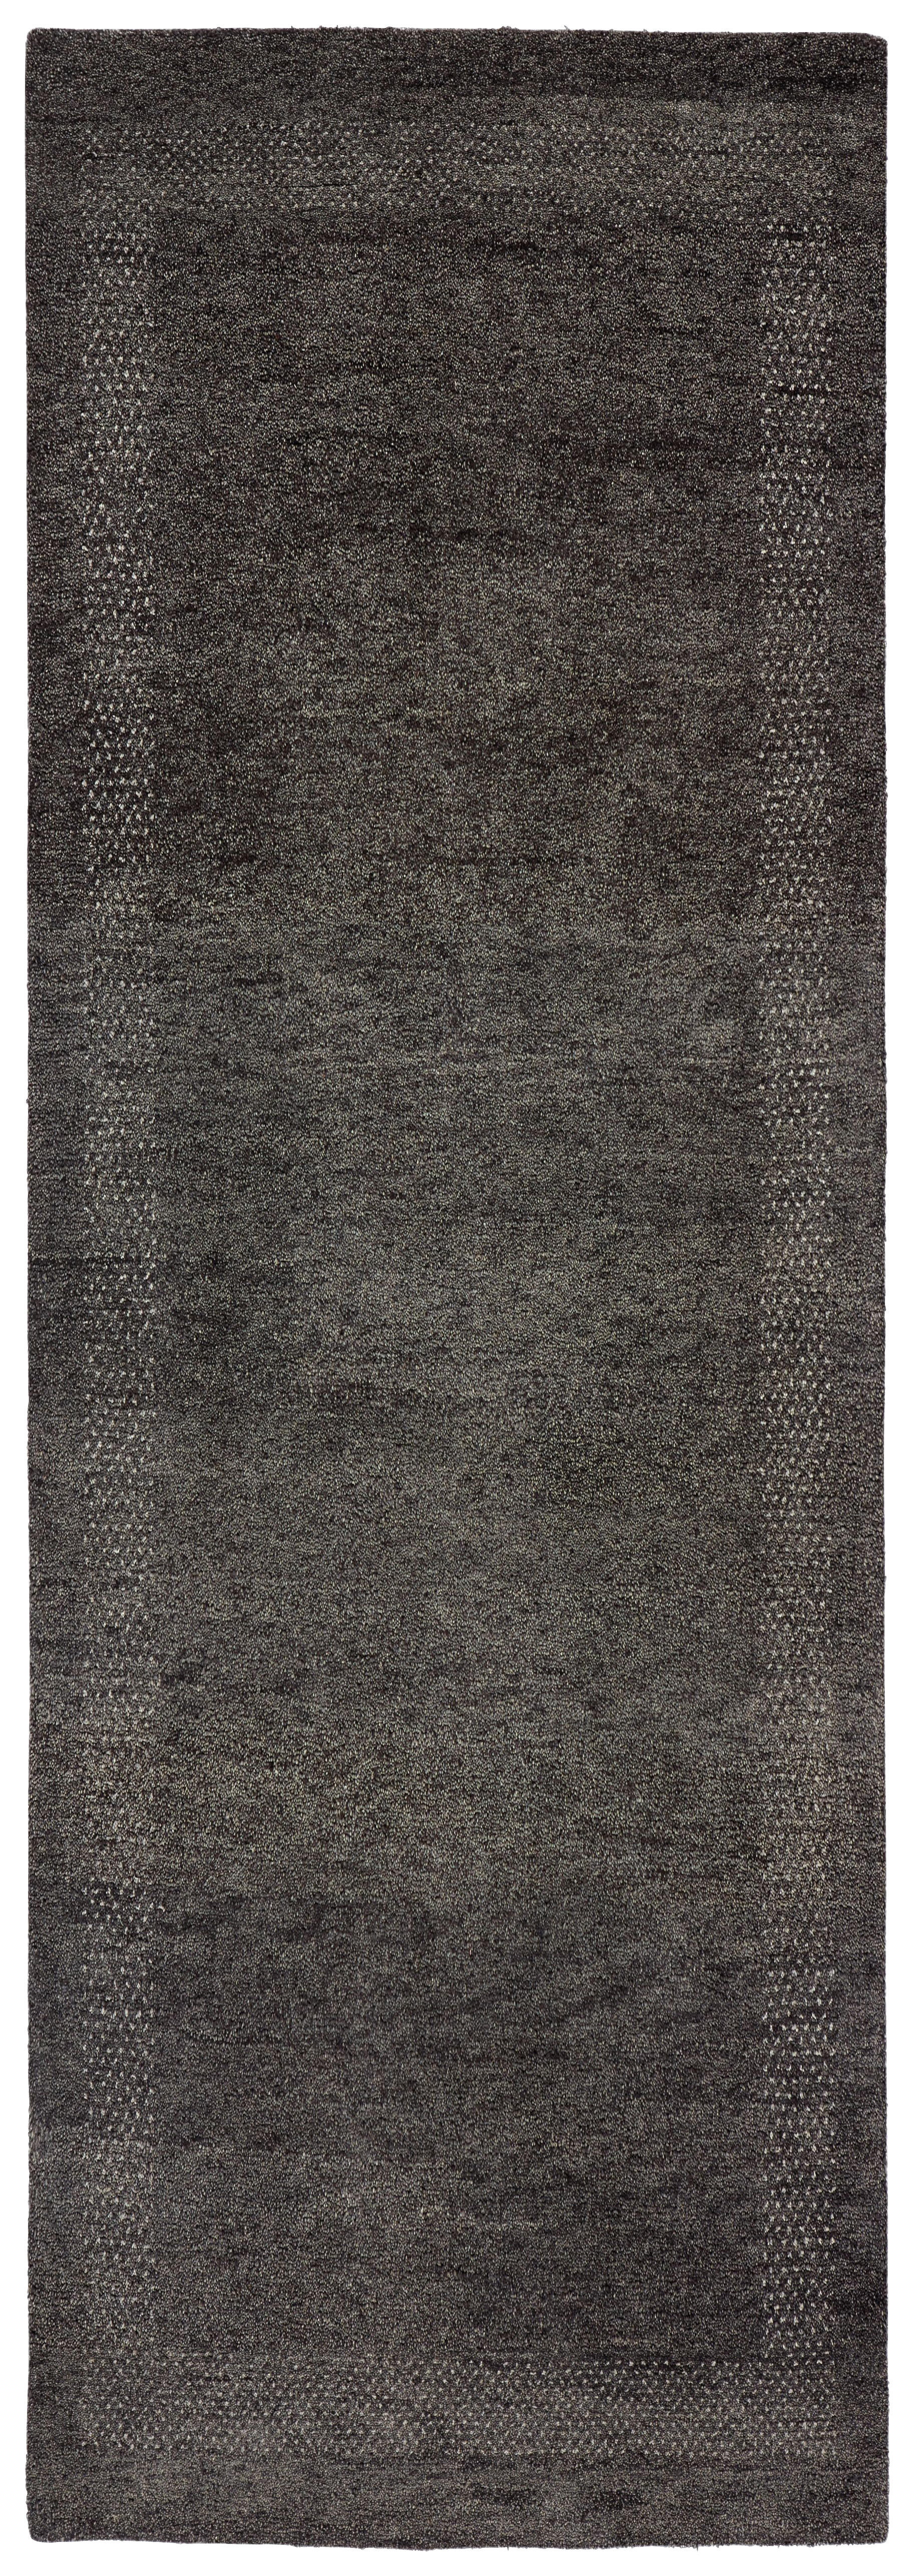 Wollteppich  80/250 cm  Anthrazit, Schwarz  - Anthrazit/Schwarz, KONVENTIONELL, Naturmaterialien/Textil (80/250cm) - Cazaris